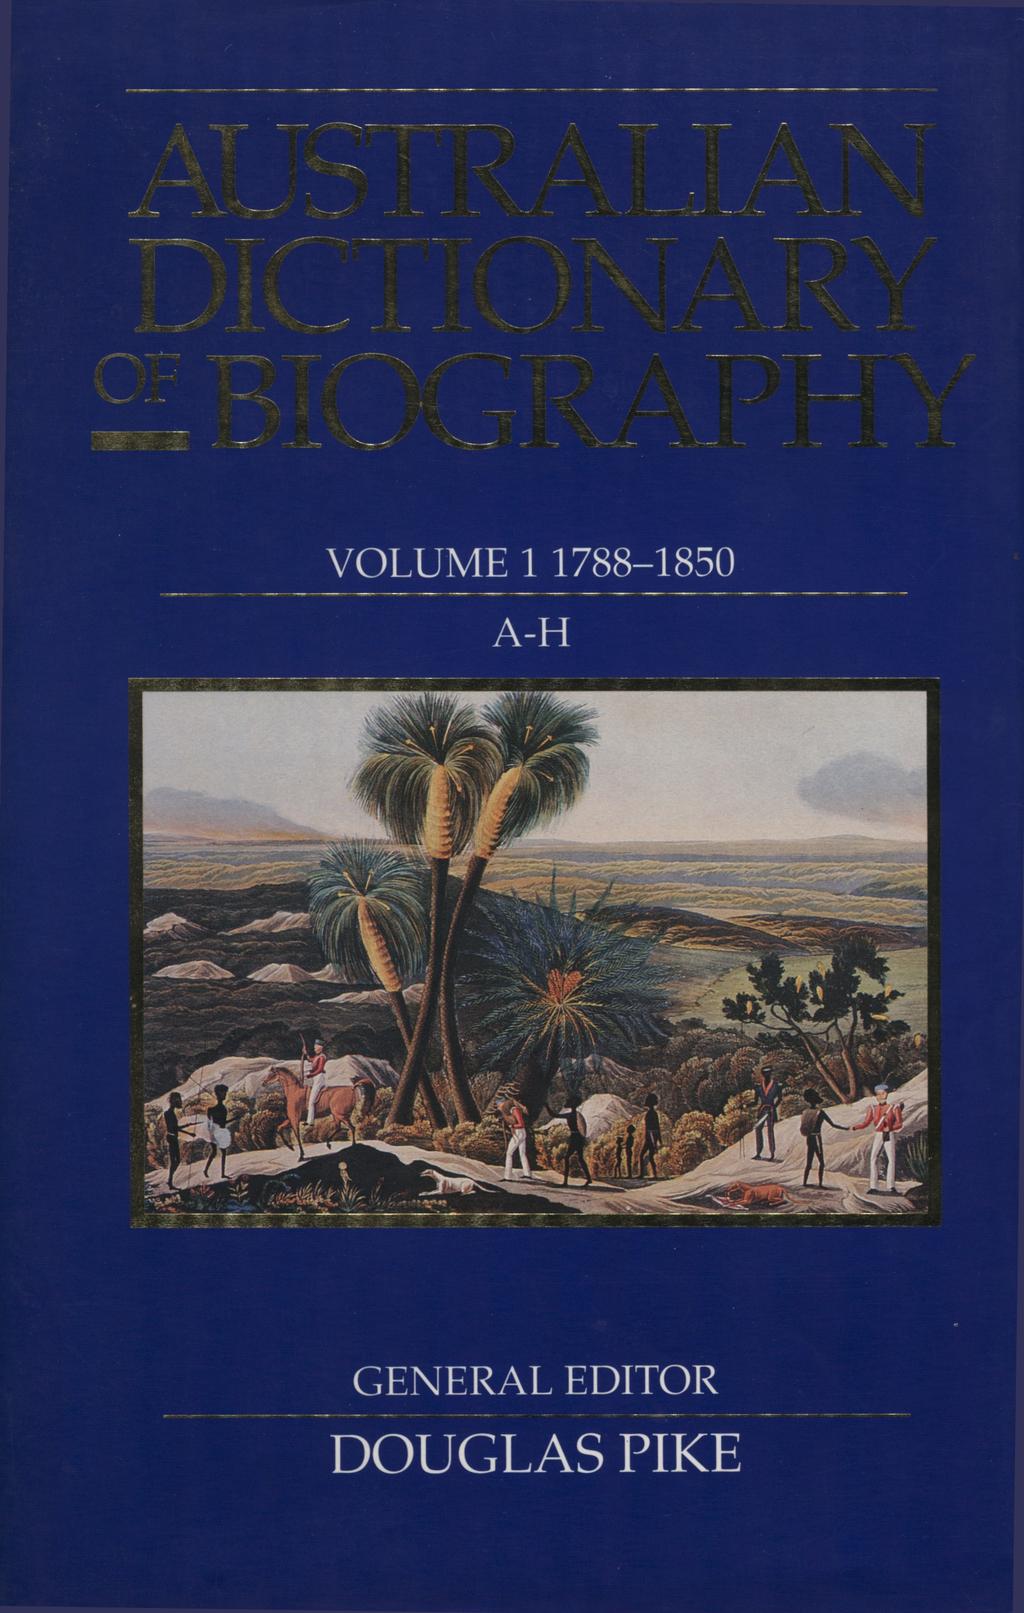 r. VOLUME 1 1788-1850 A-H